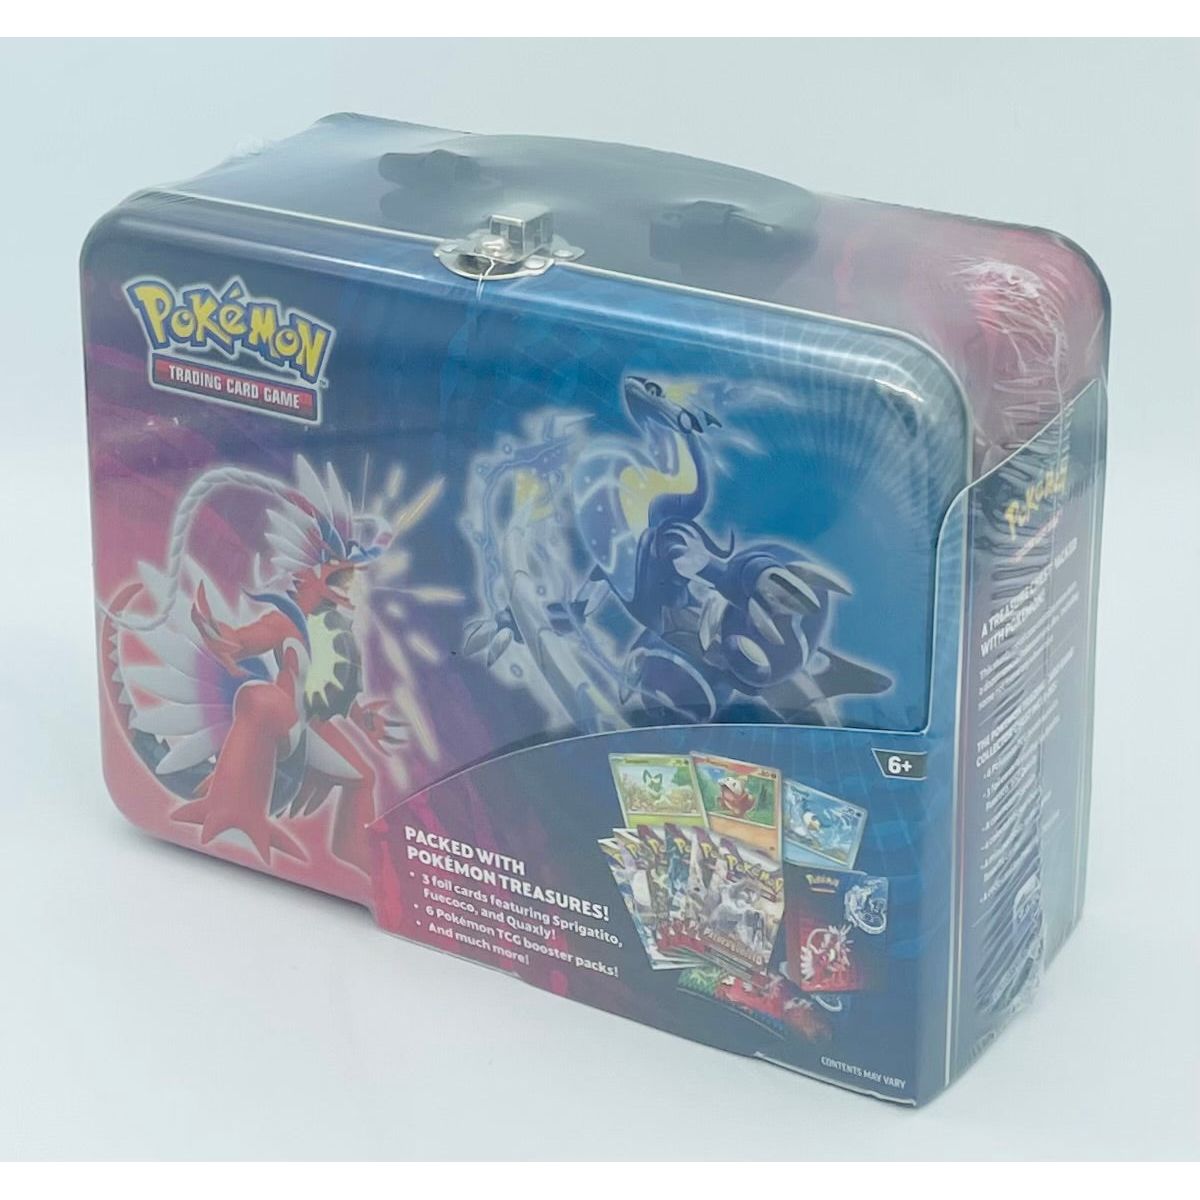 Pokemon Celebrations Treasure Chest ( Lunch Box )